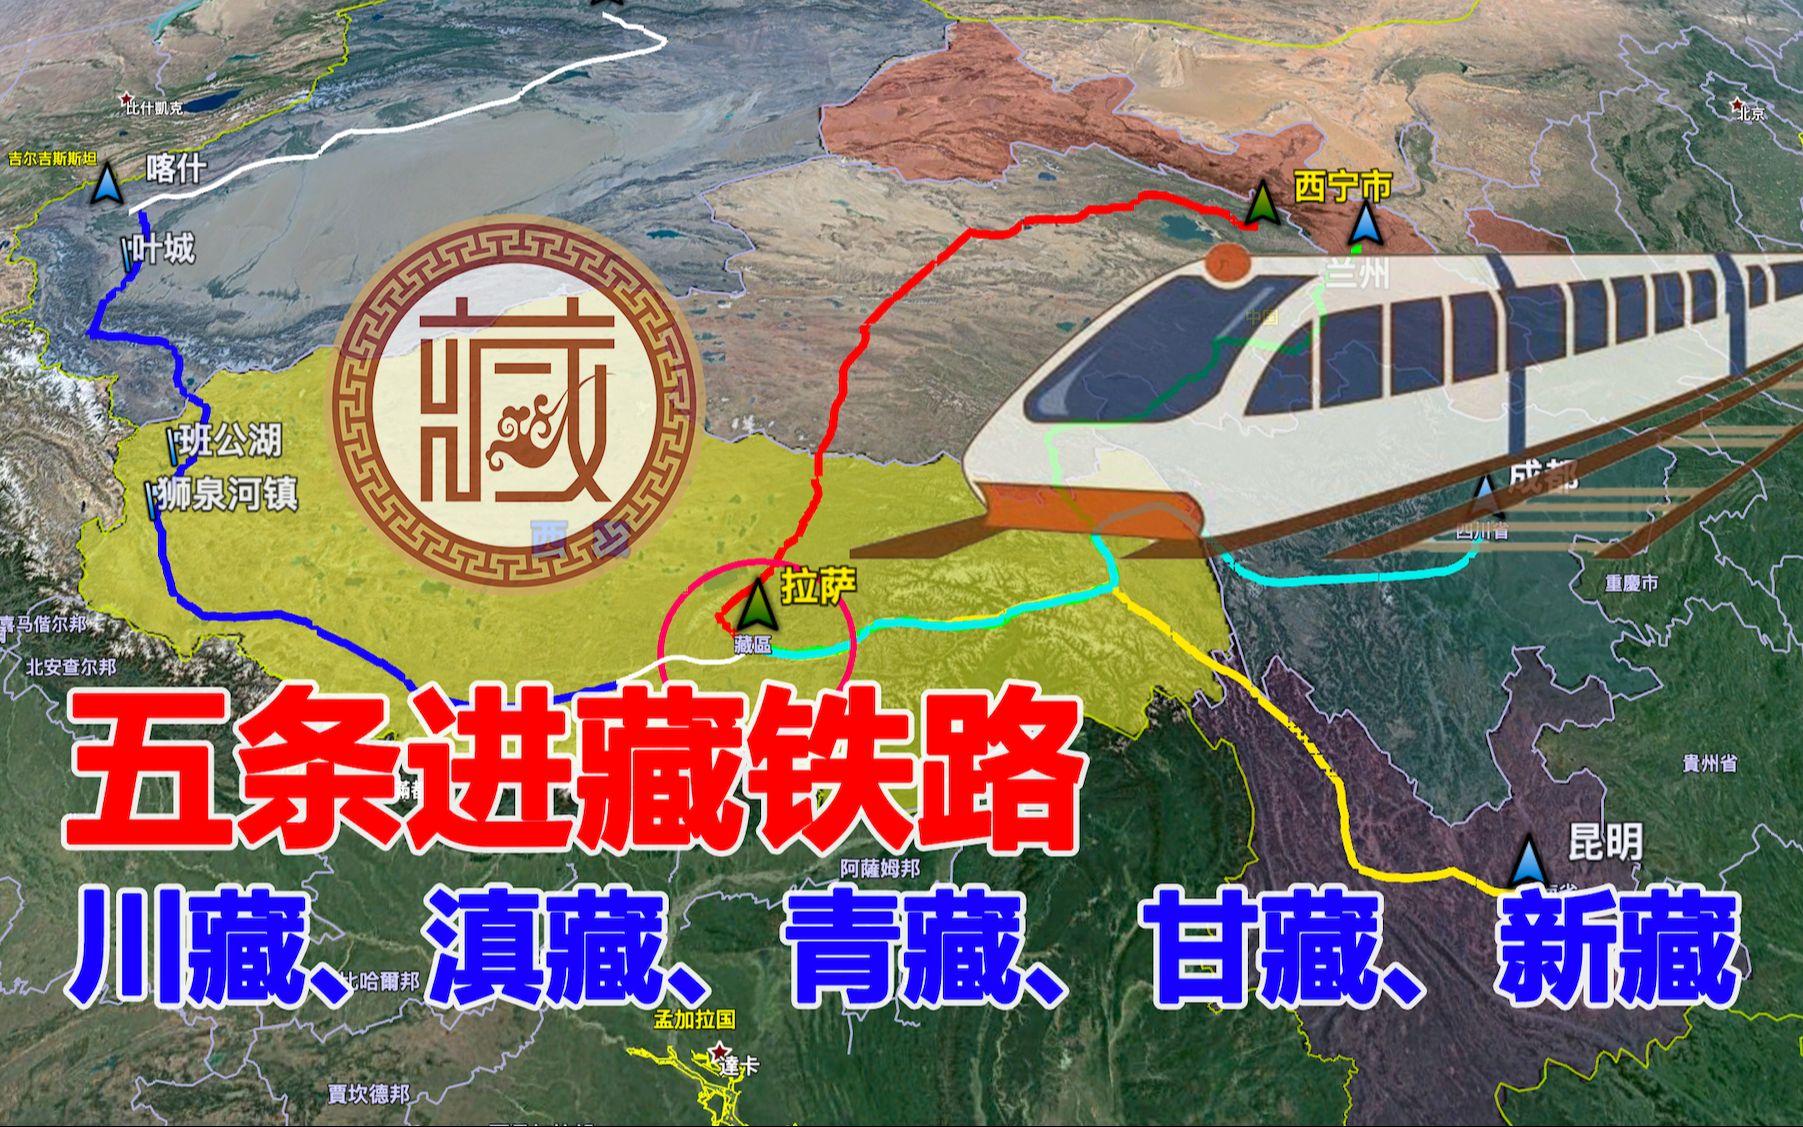 未来五条进藏铁路线路图,新藏铁路太重要了,三维地图了解下